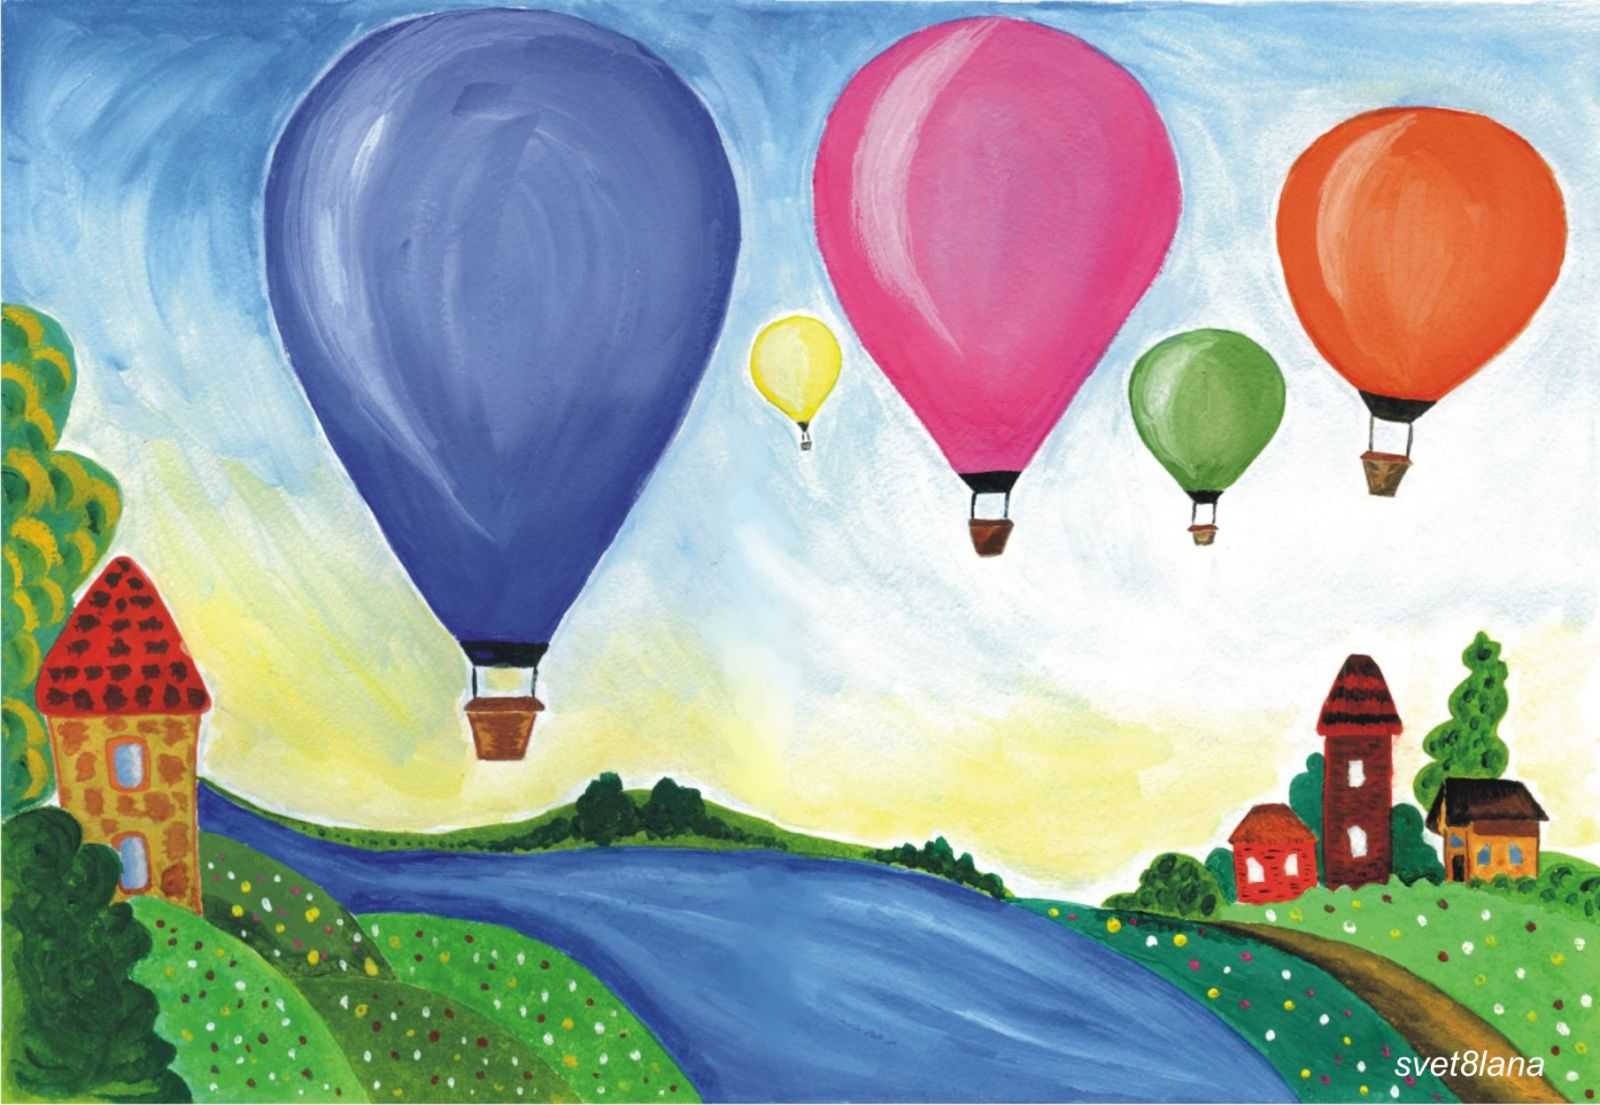 Воздушный шар - рисунок для детей, в котором используются разные материалы – гуашь или акварель, цветные и простые карандаши, восковые мелки В процессе рисования закрепляется умение работать с этими материалами Геометрические фигуры, как и шары, развивают